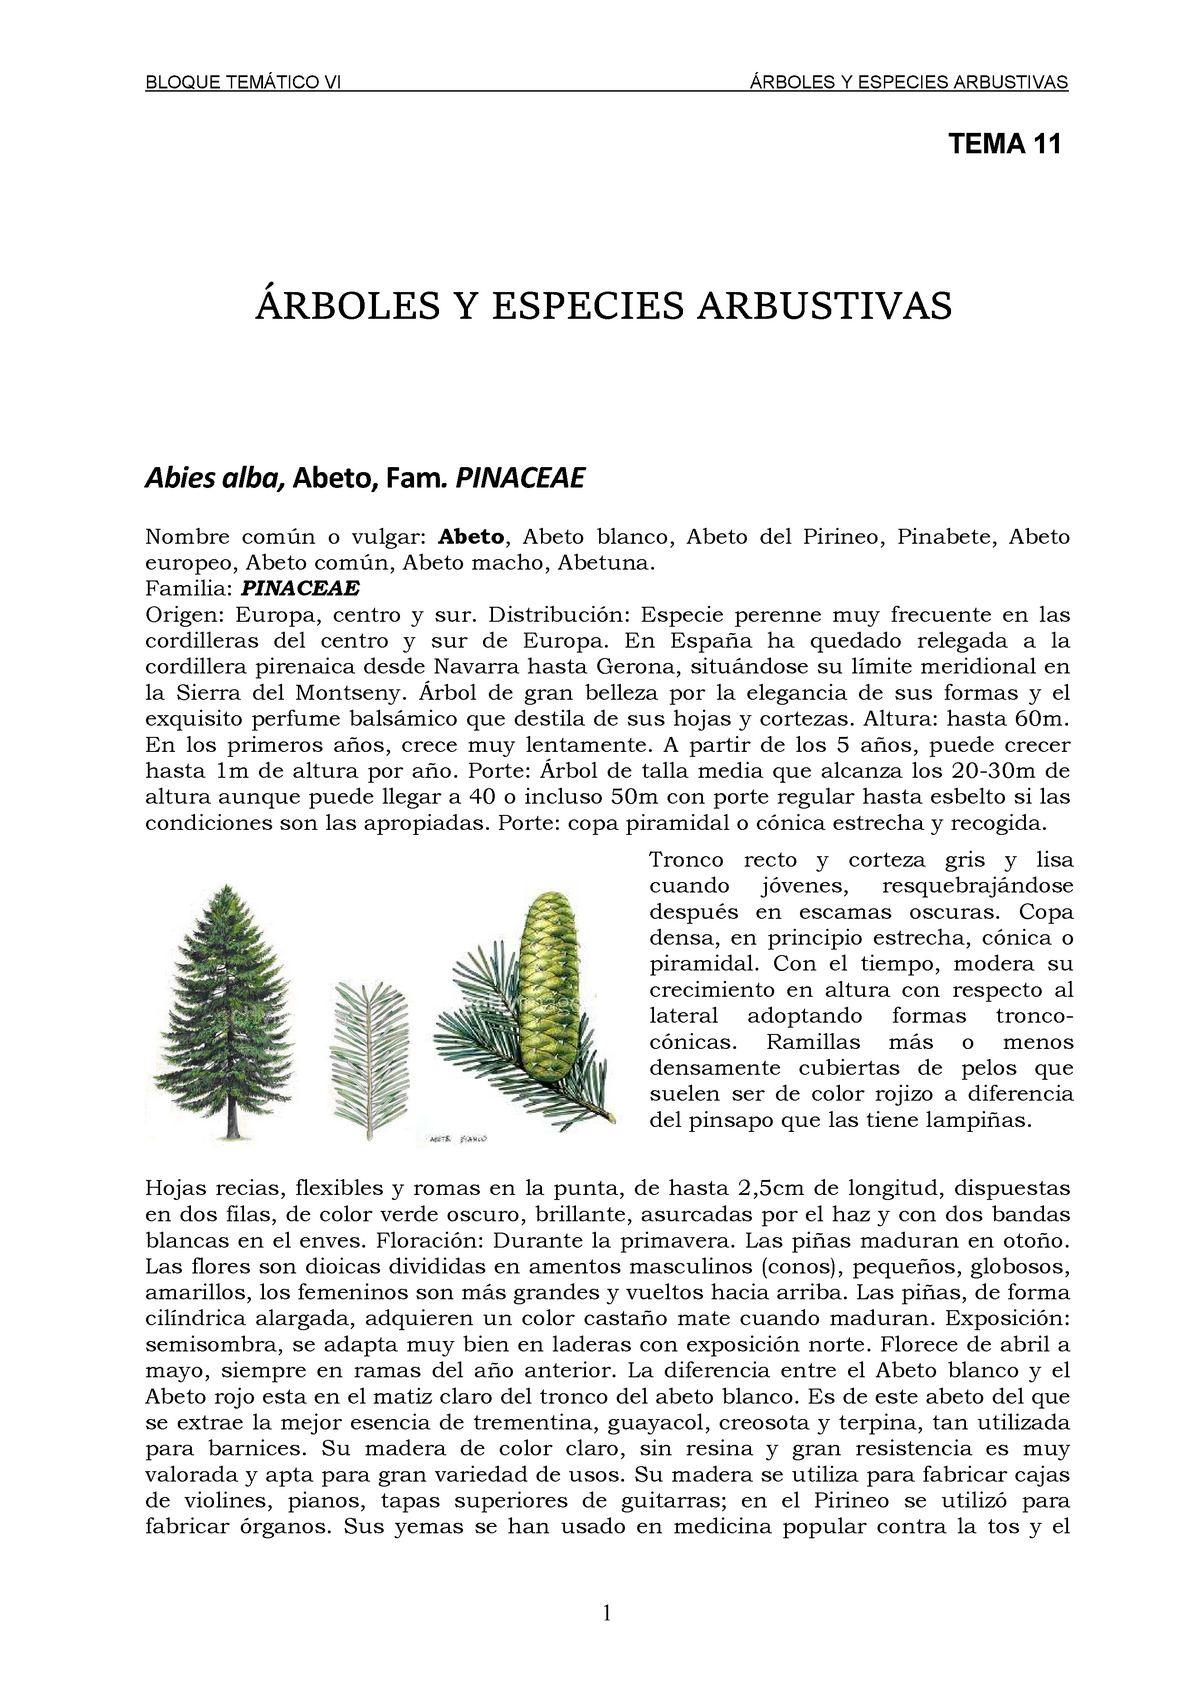 Tema 11 Arboles Y Especies Arbustivas 25153304 Ual Studocu